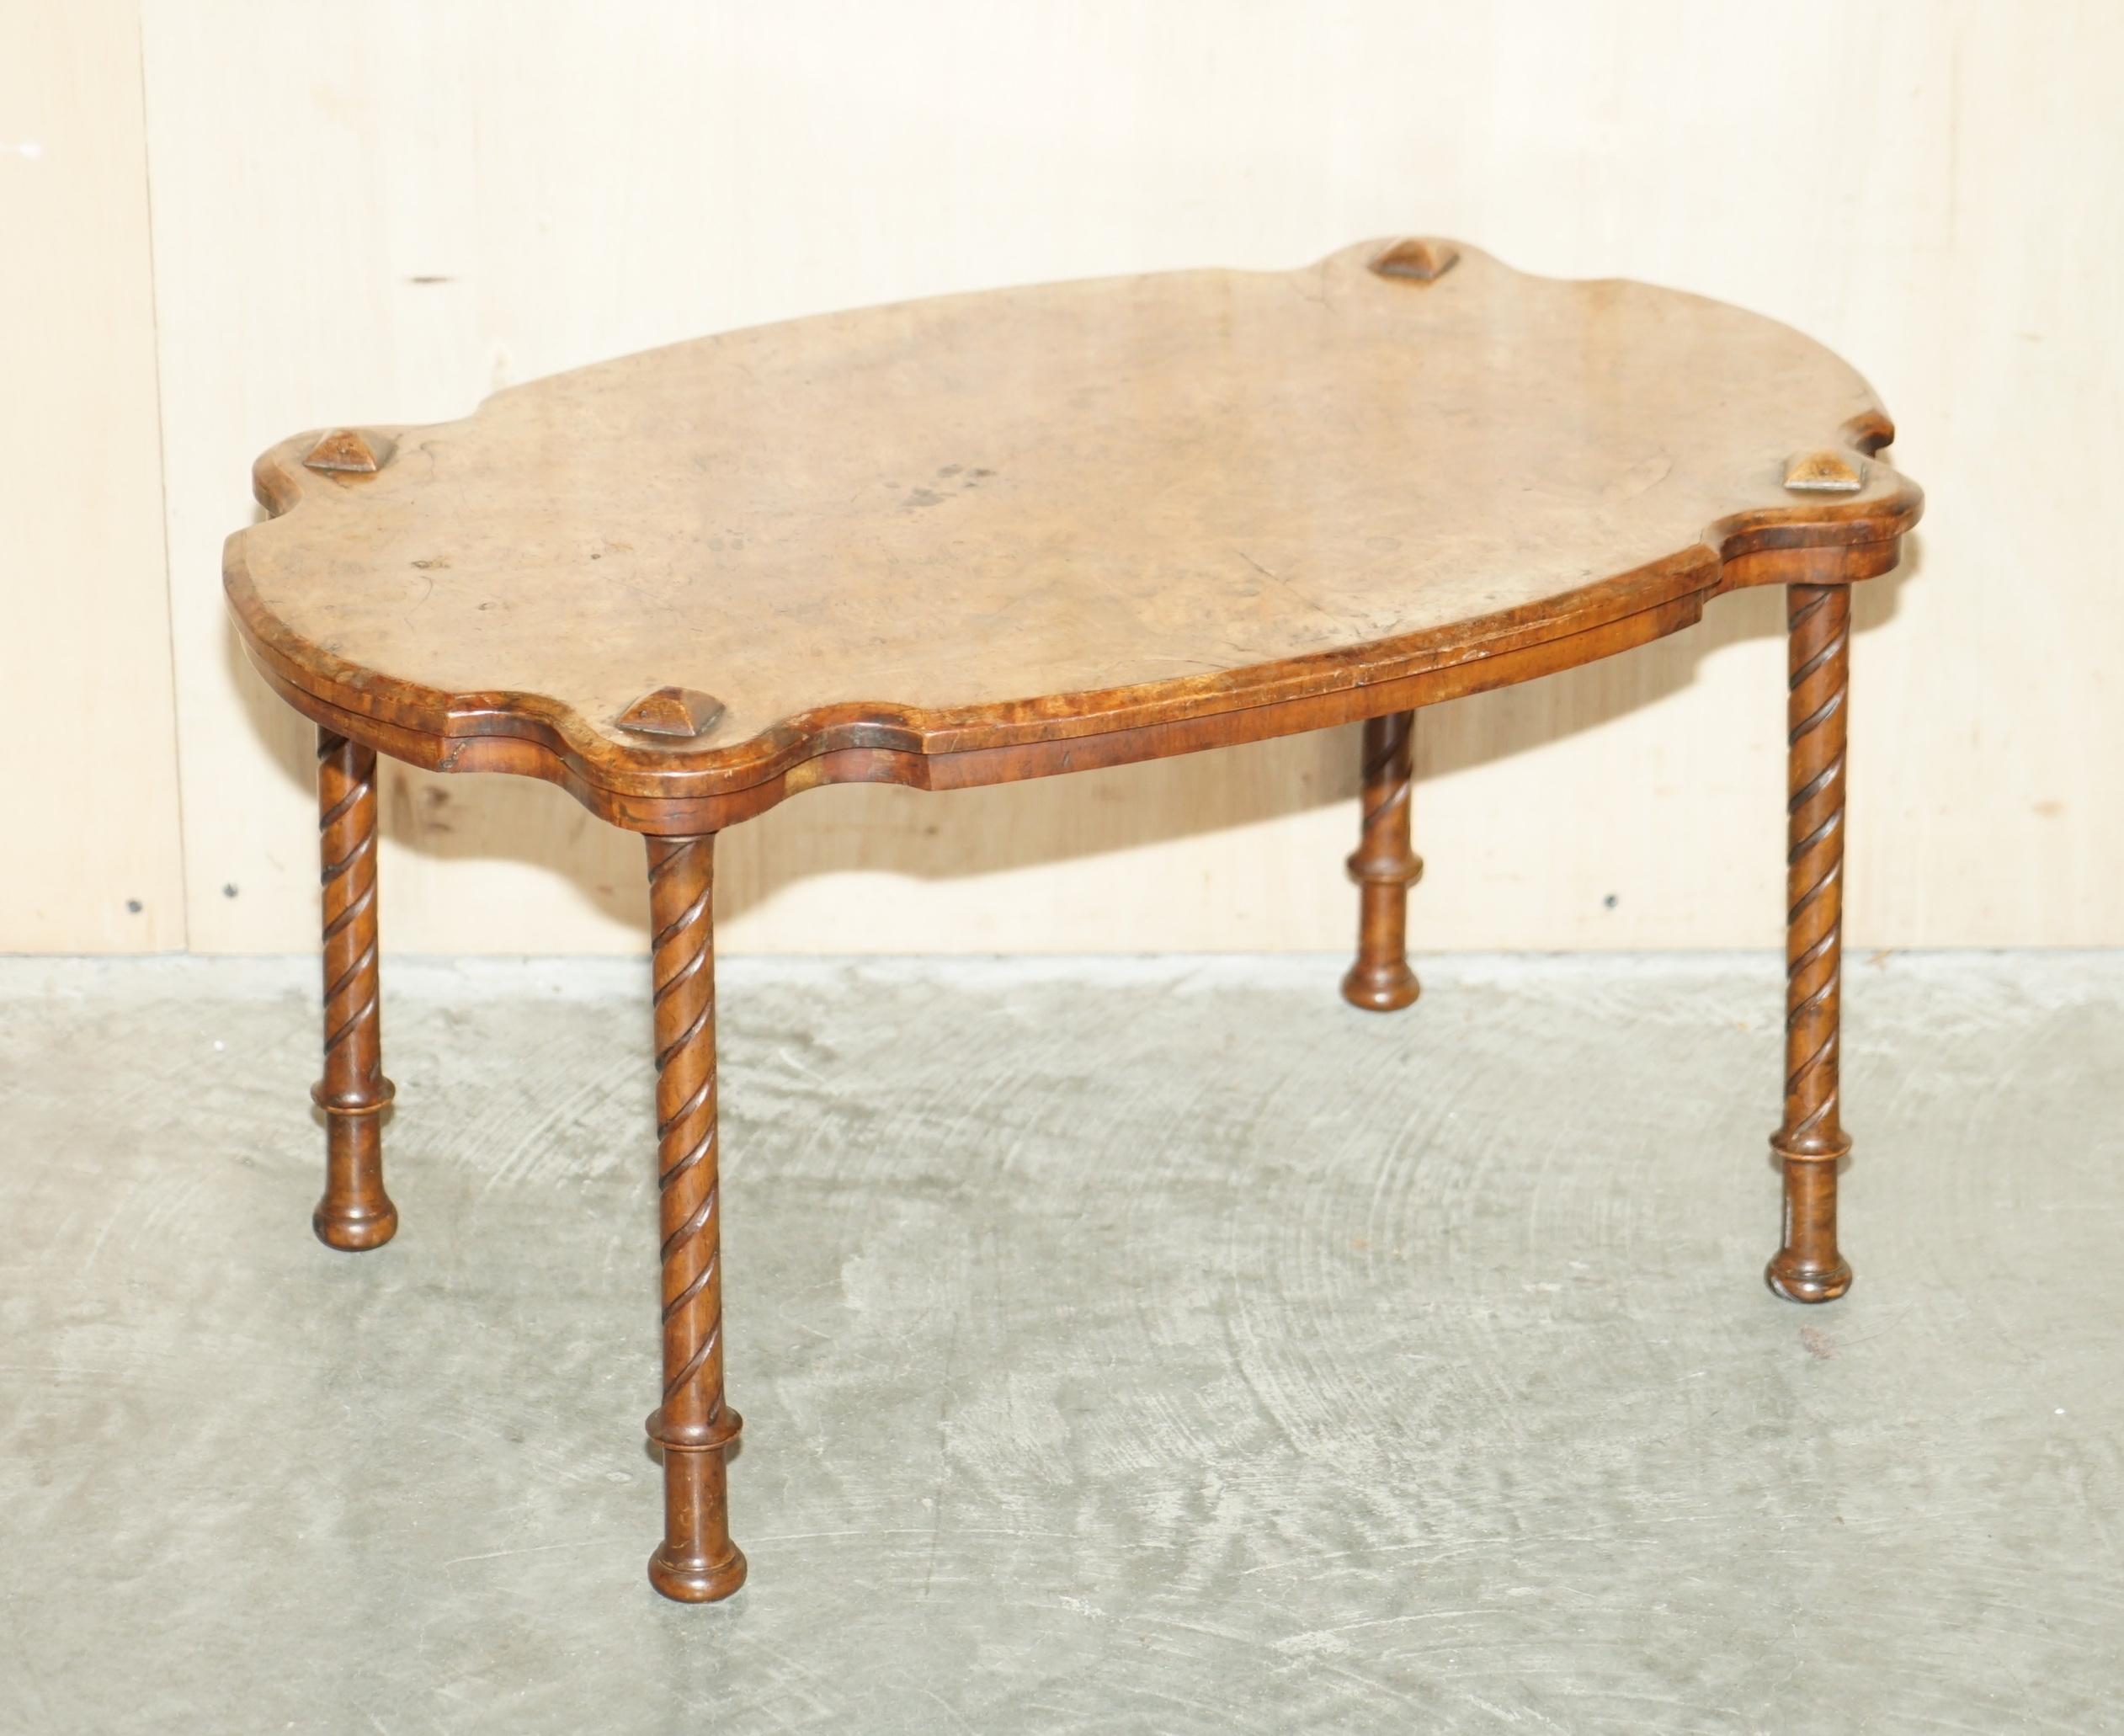 Nous avons le plaisir de proposer à la vente cette superbe table basse en ronce de noyer, fabriquée à la main en Angleterre vers 1880, avec des pieds tordus sculptés.

Une belle table basse, bien faite et décorative, avec certaines des plus belles